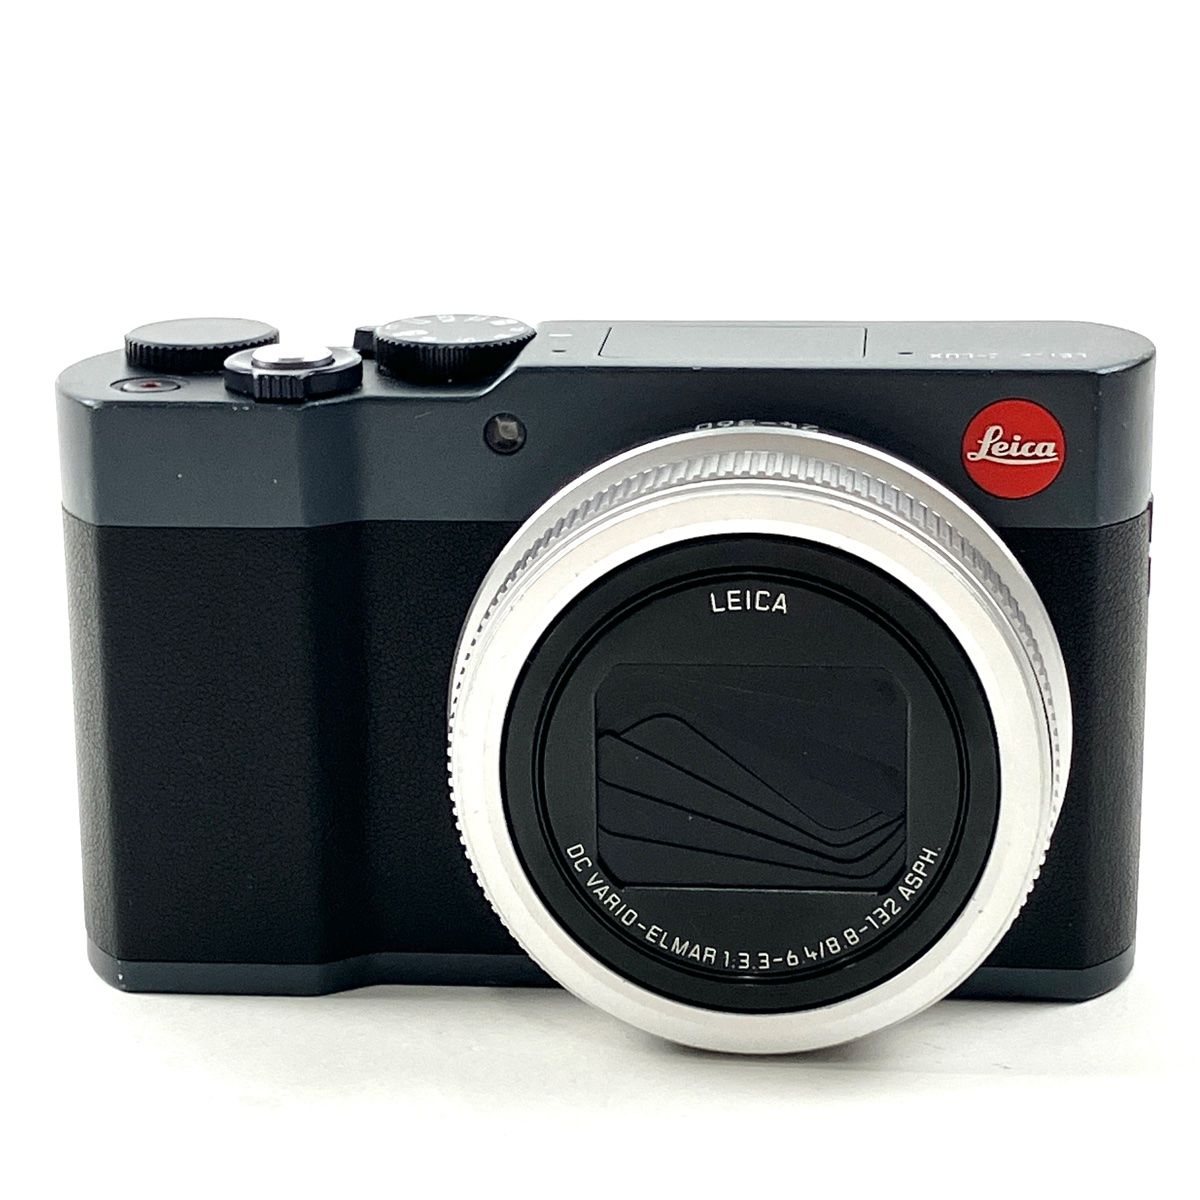 ライカ LEICA C-LUX ミッドナイトブルー コンパクトデジタルカメラ 【中古】